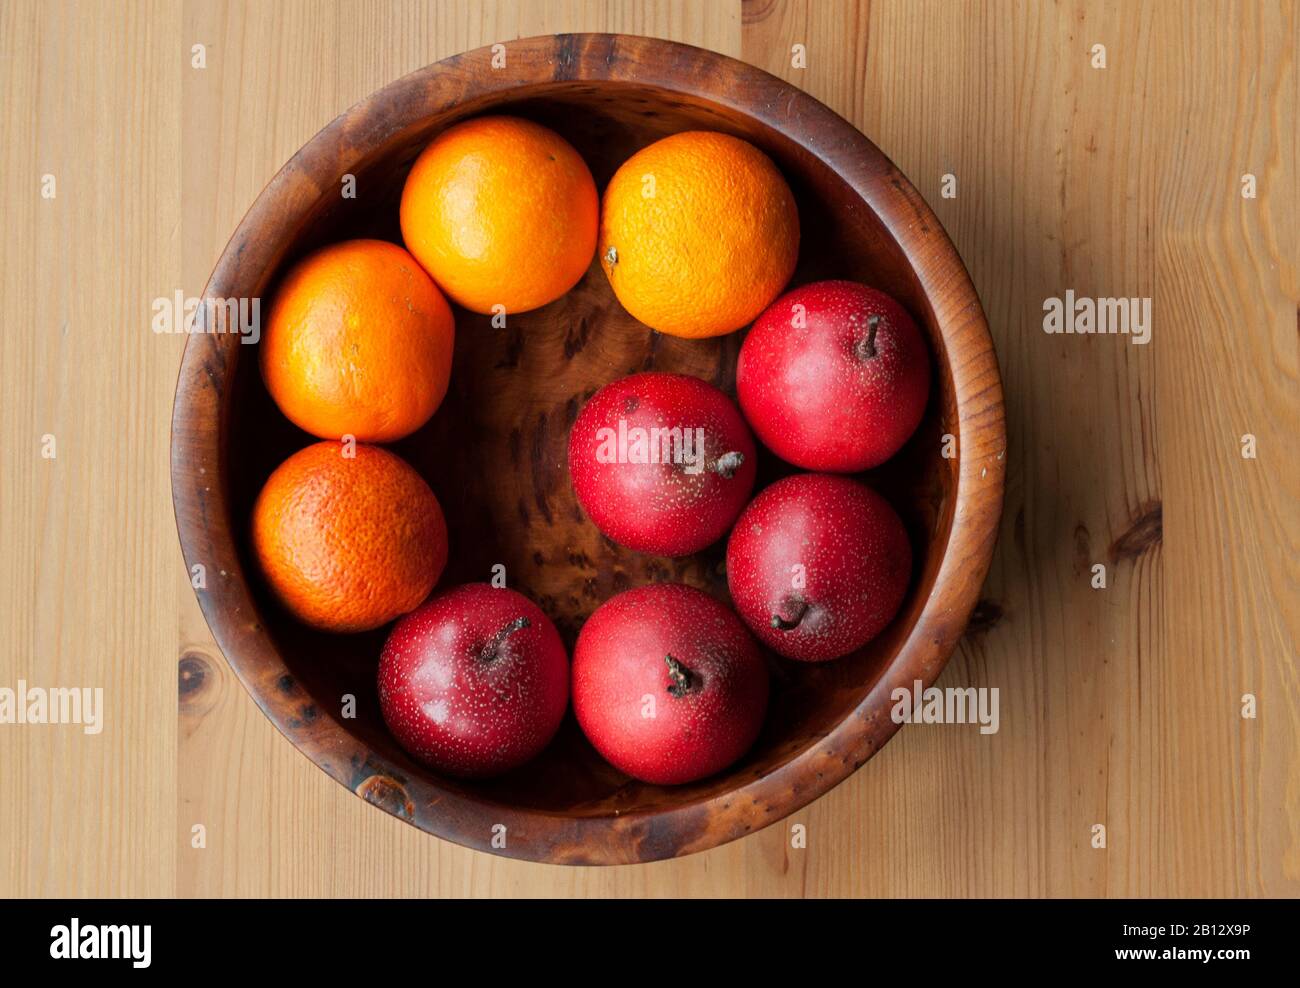 Colpo di testa di bella ciotola di legno di autum e frutta d'inverno - arance di sangue e pere di nashi (pere asiatiche, pere giapponesi) su una cucina di legno ta Foto Stock